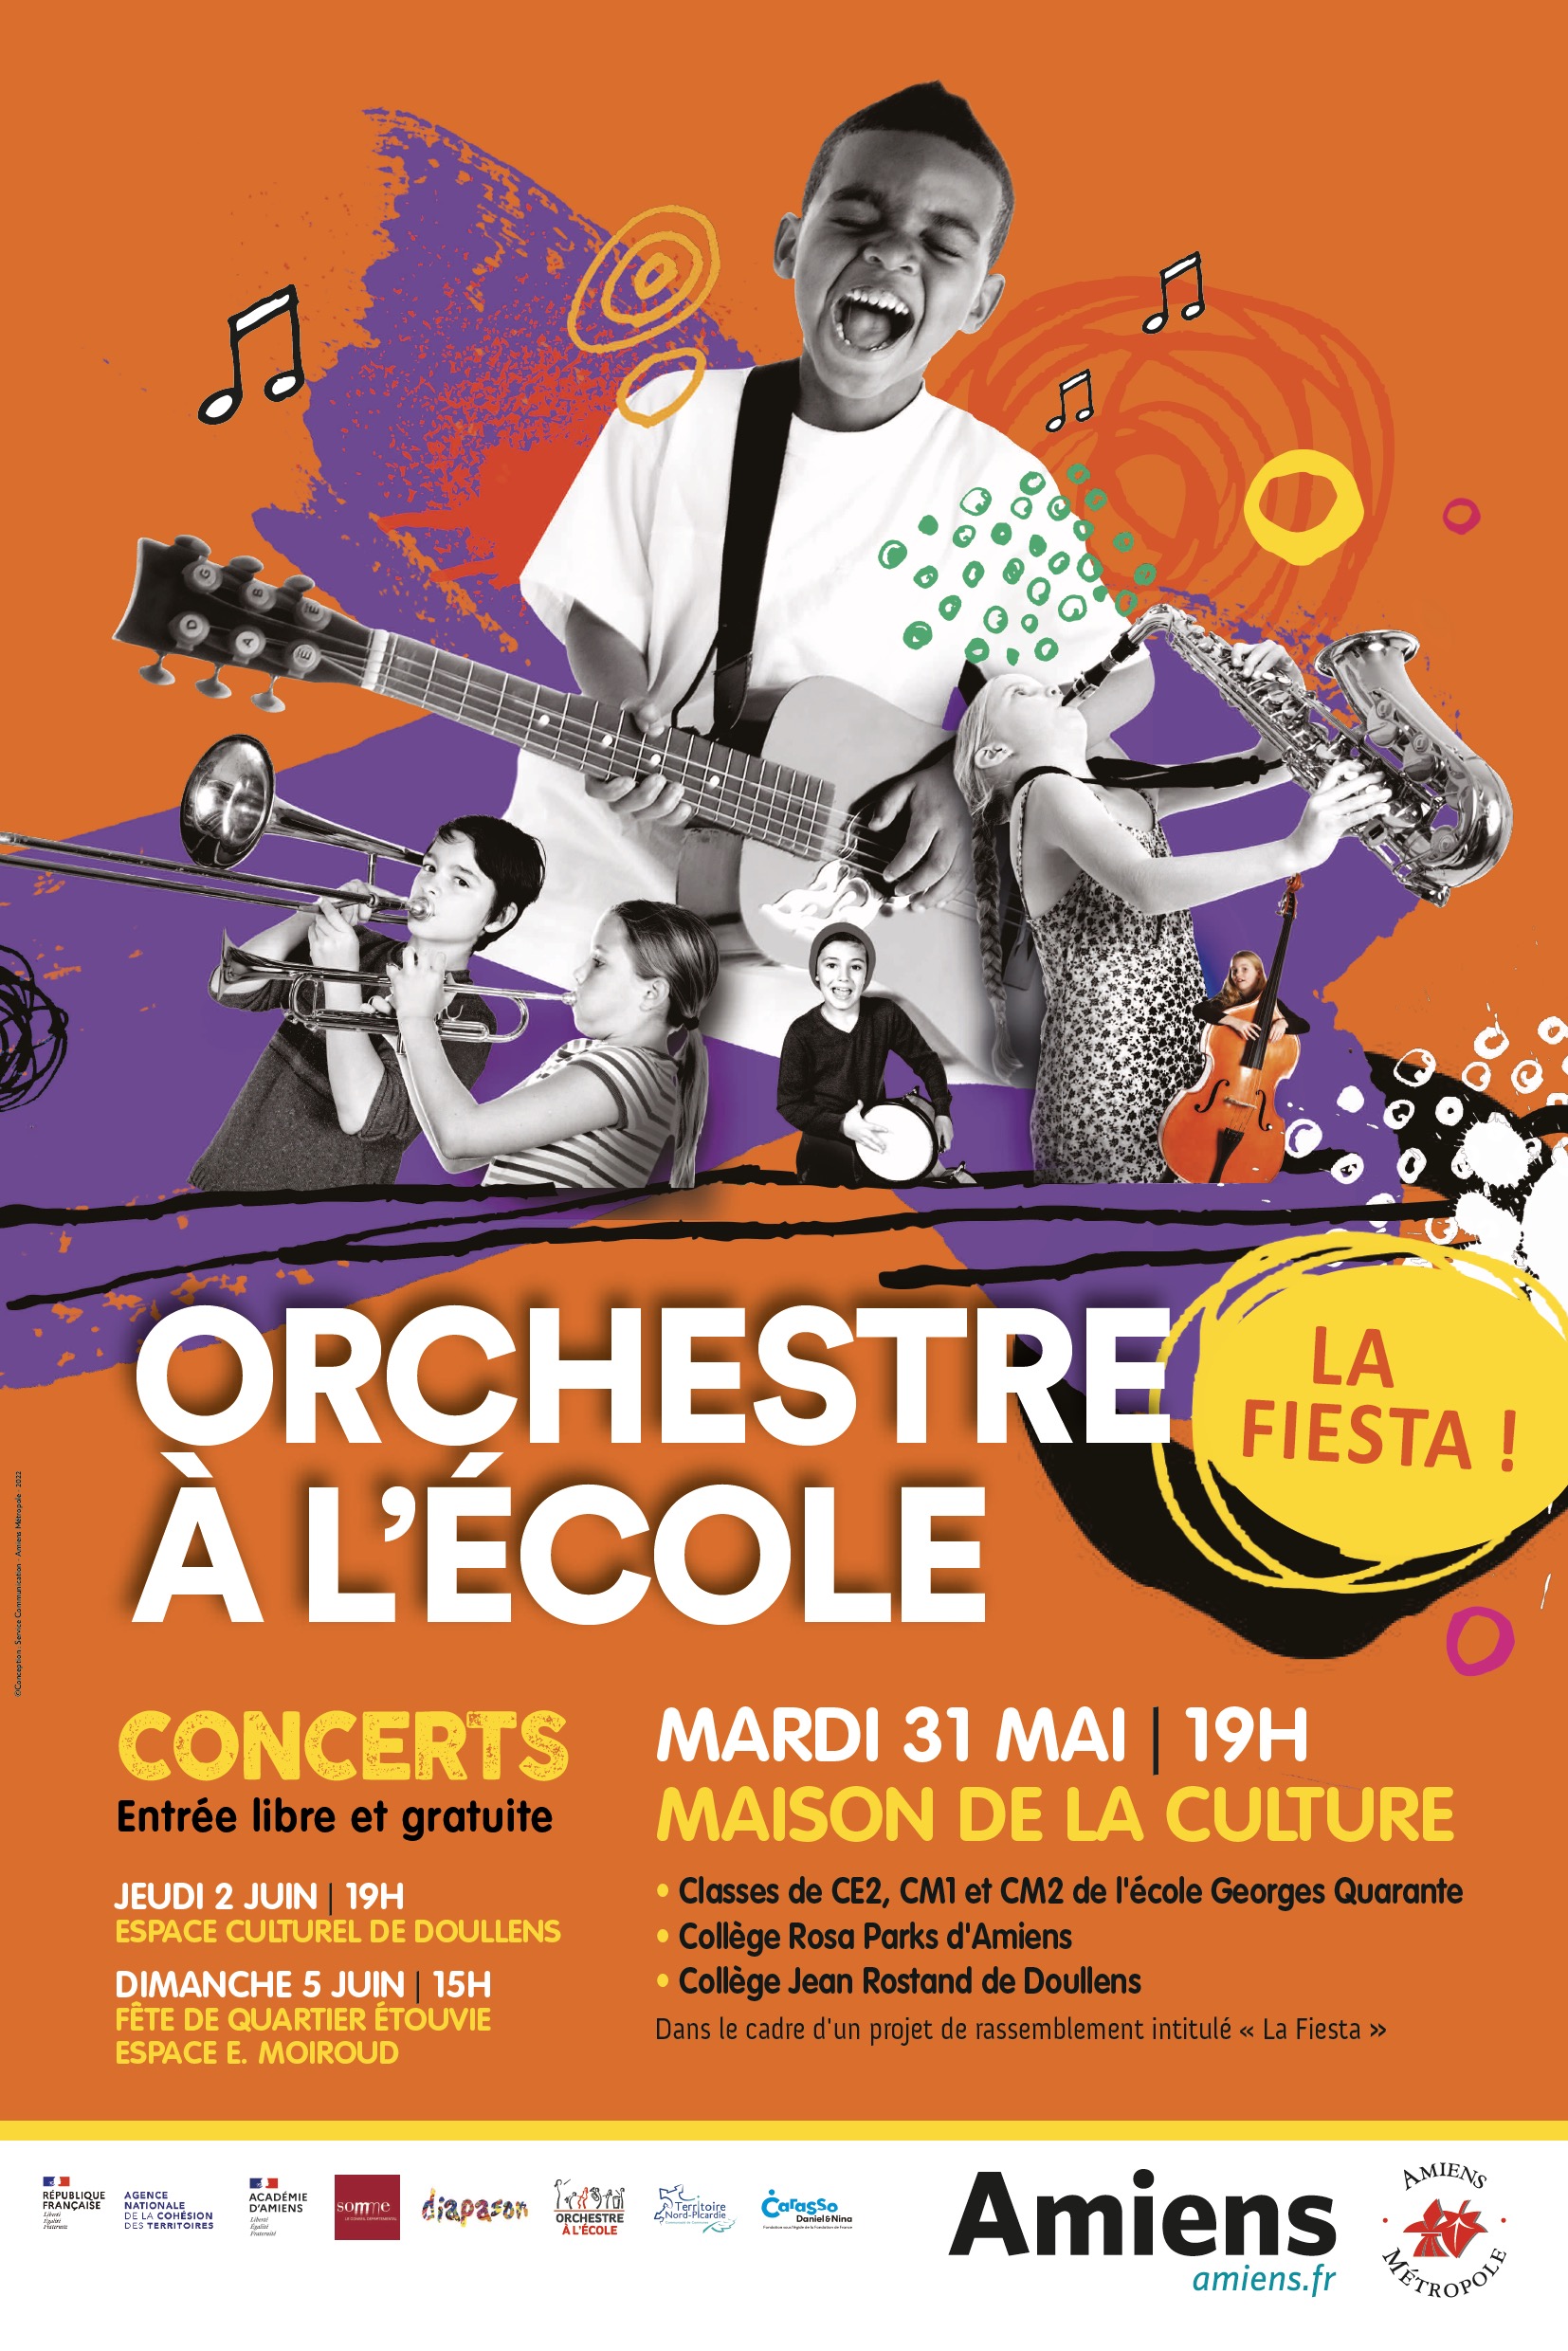 Mardi 31 mai, concert d’Orchestre à l’école à la Maison de la Culture d’Amiens 2